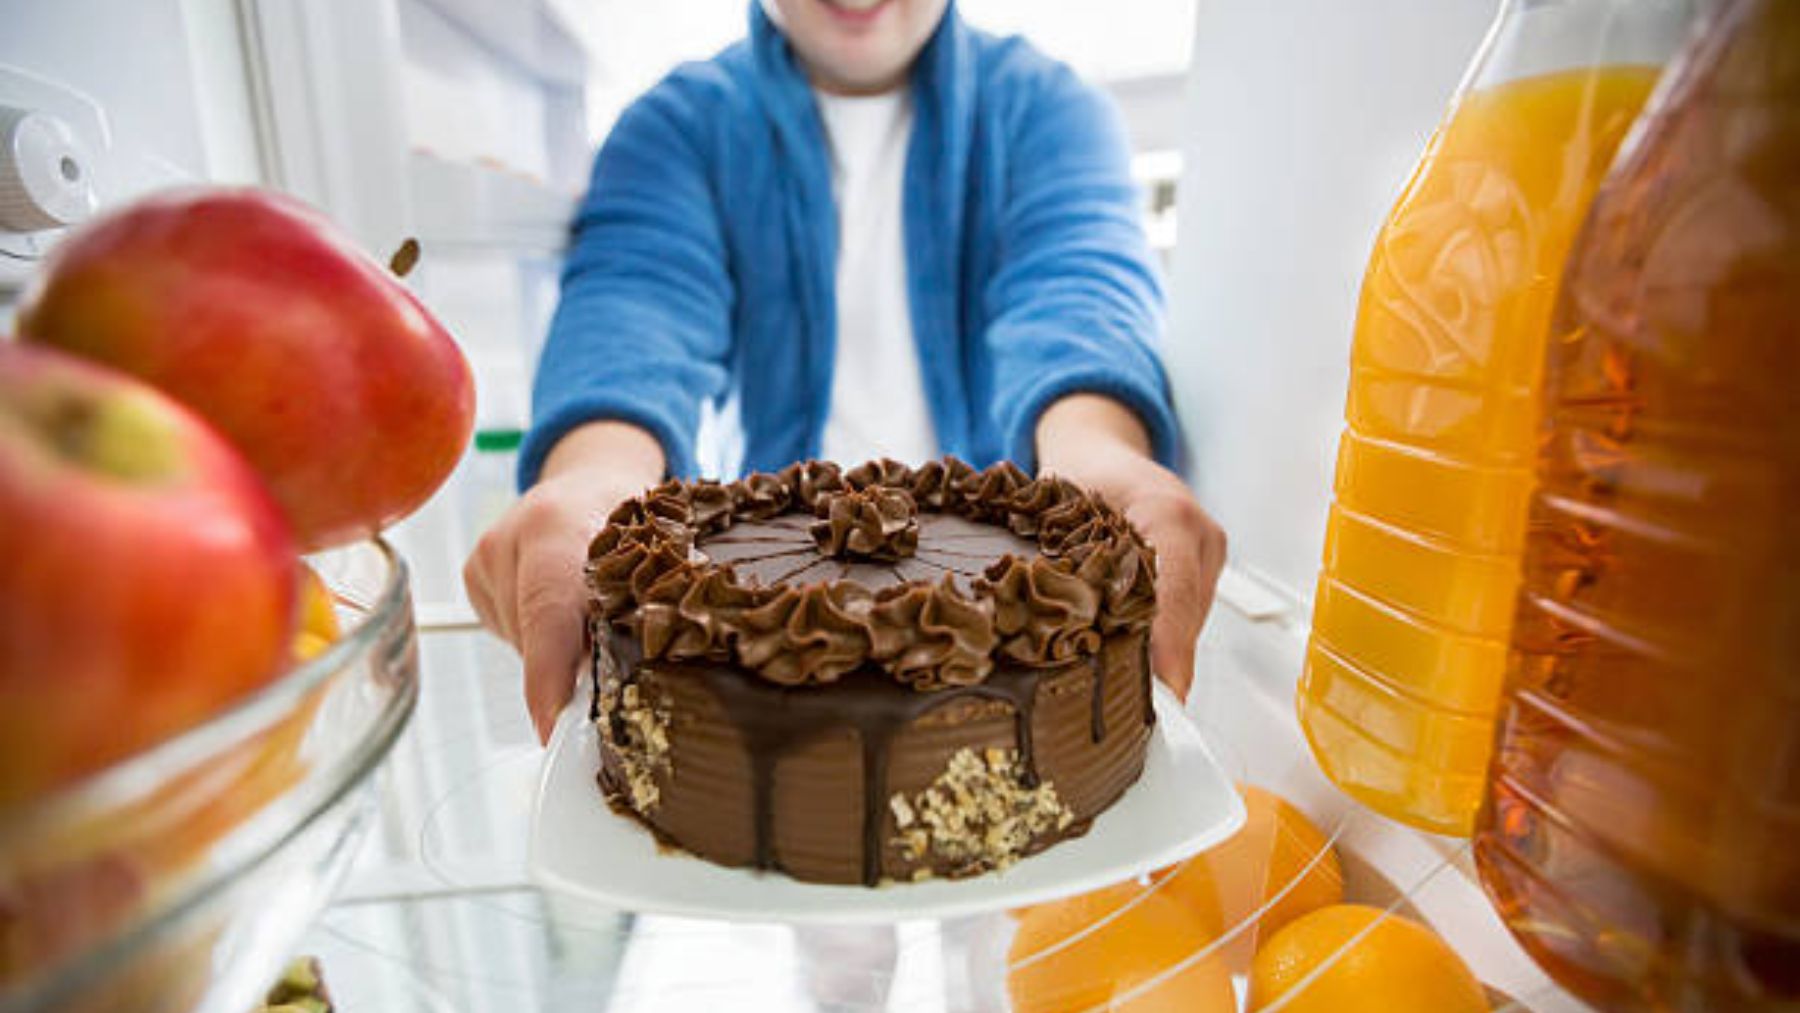 ¿Cómo conservar una tarta en la nevera? El truco más sorprendente